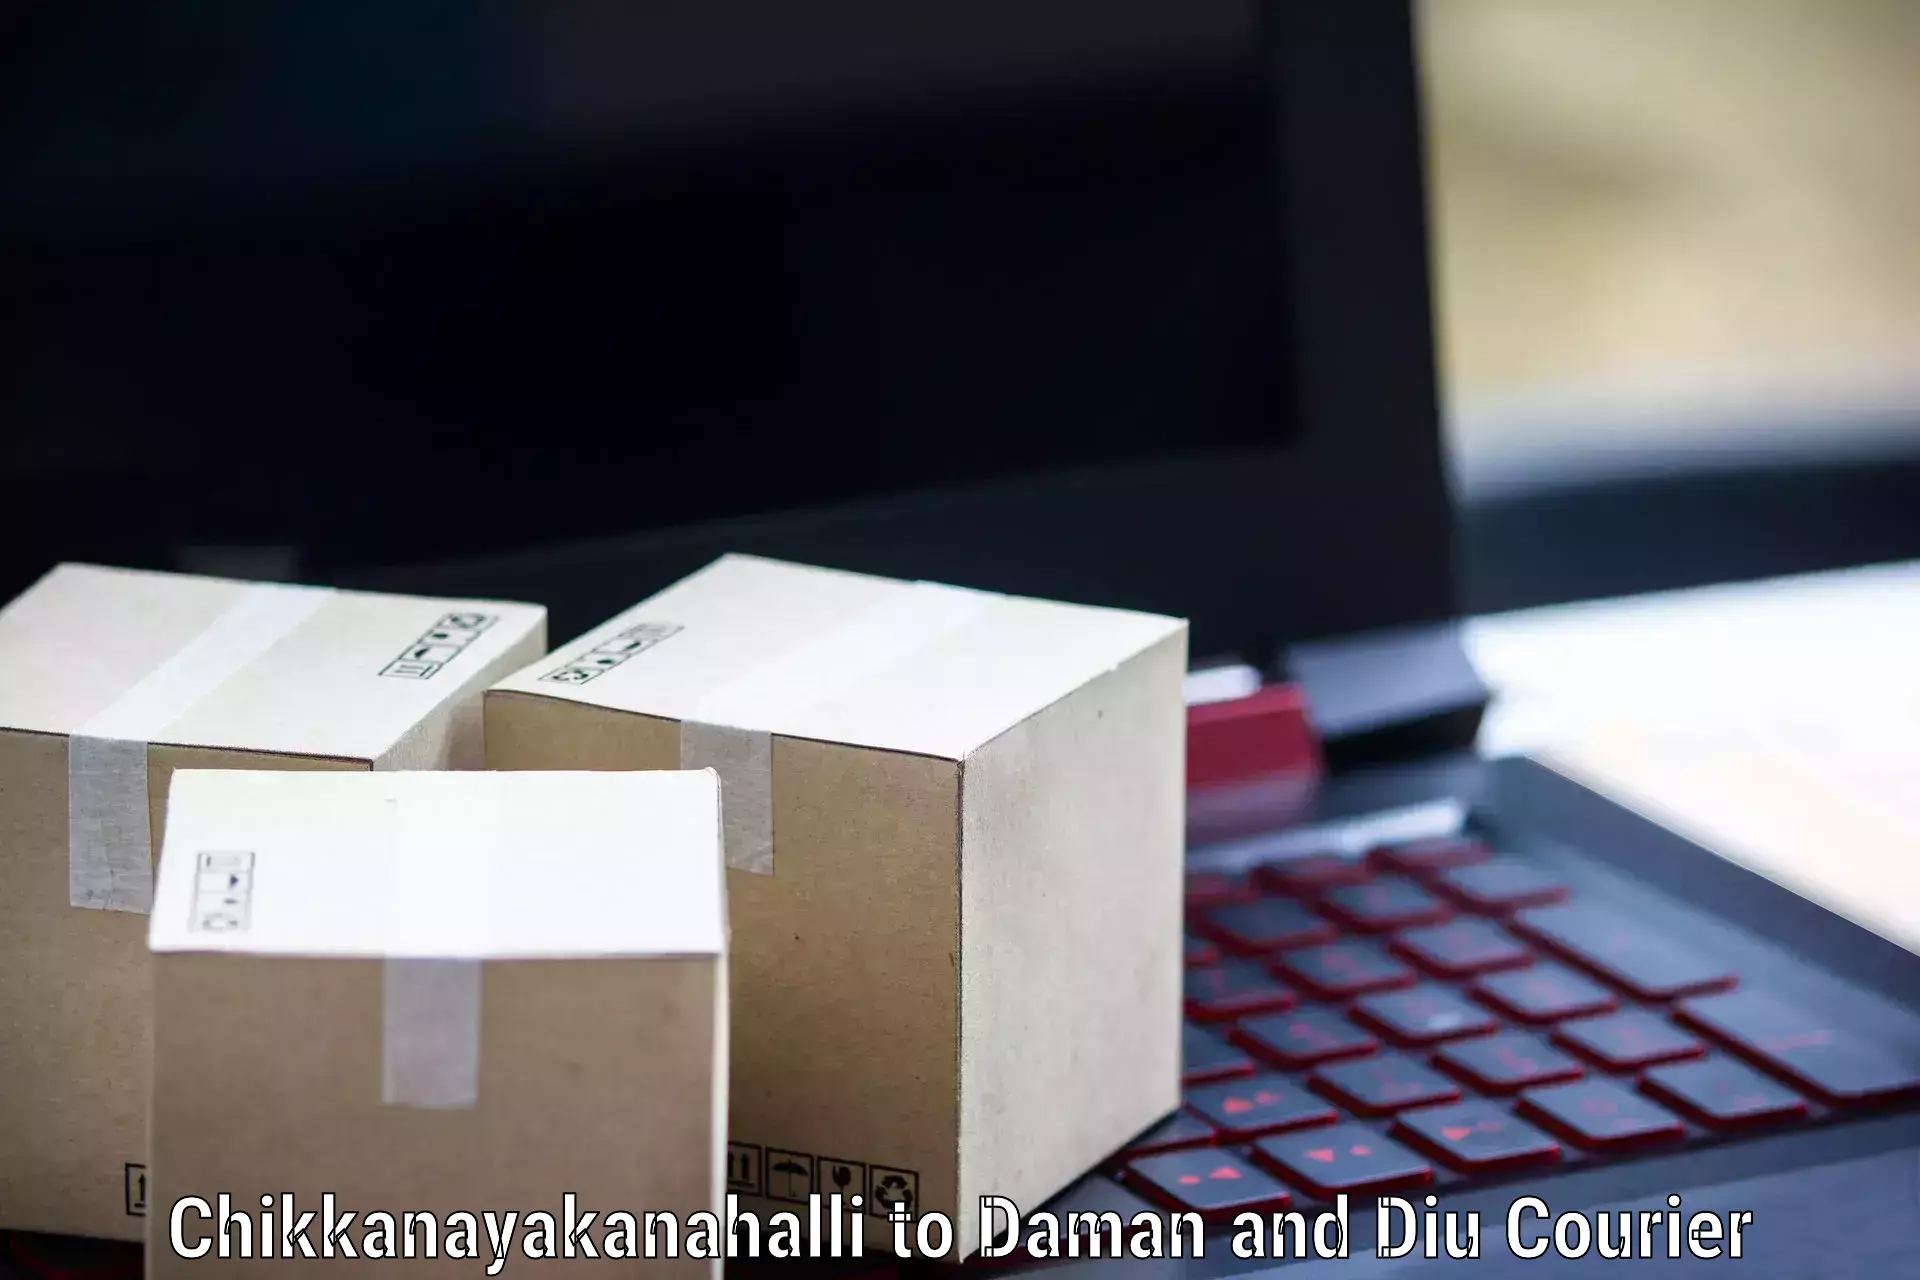 Pharmaceutical courier Chikkanayakanahalli to Diu